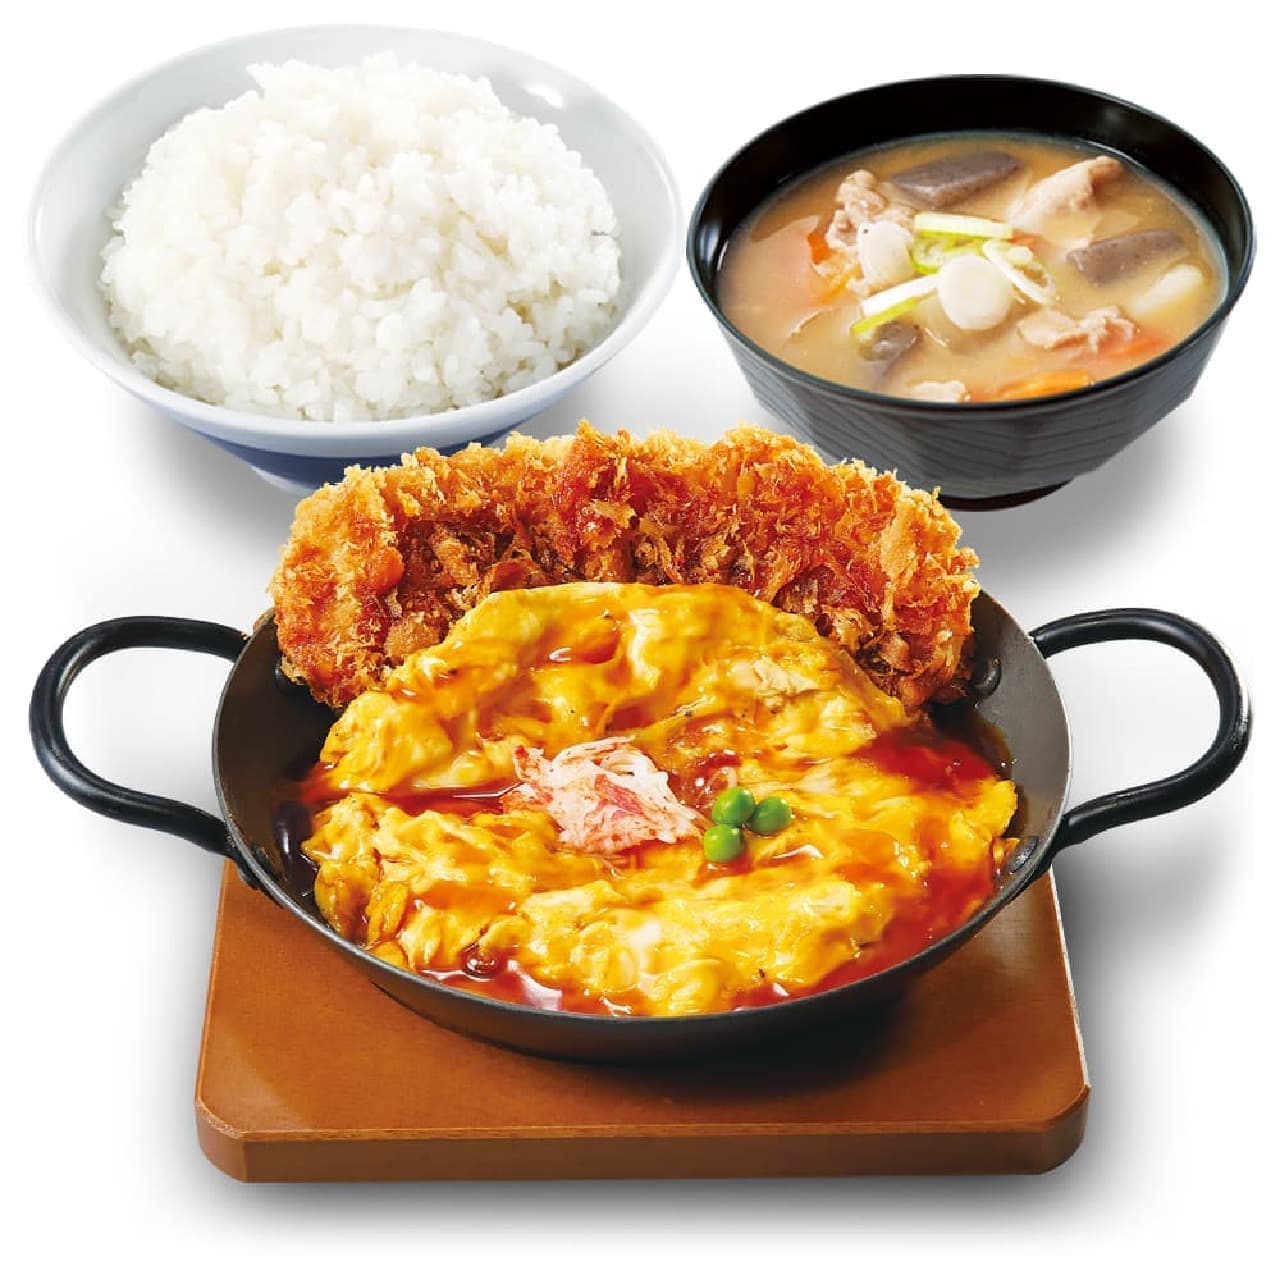 Katsuya "Tenshinhan Chicken Katsu Set Meal